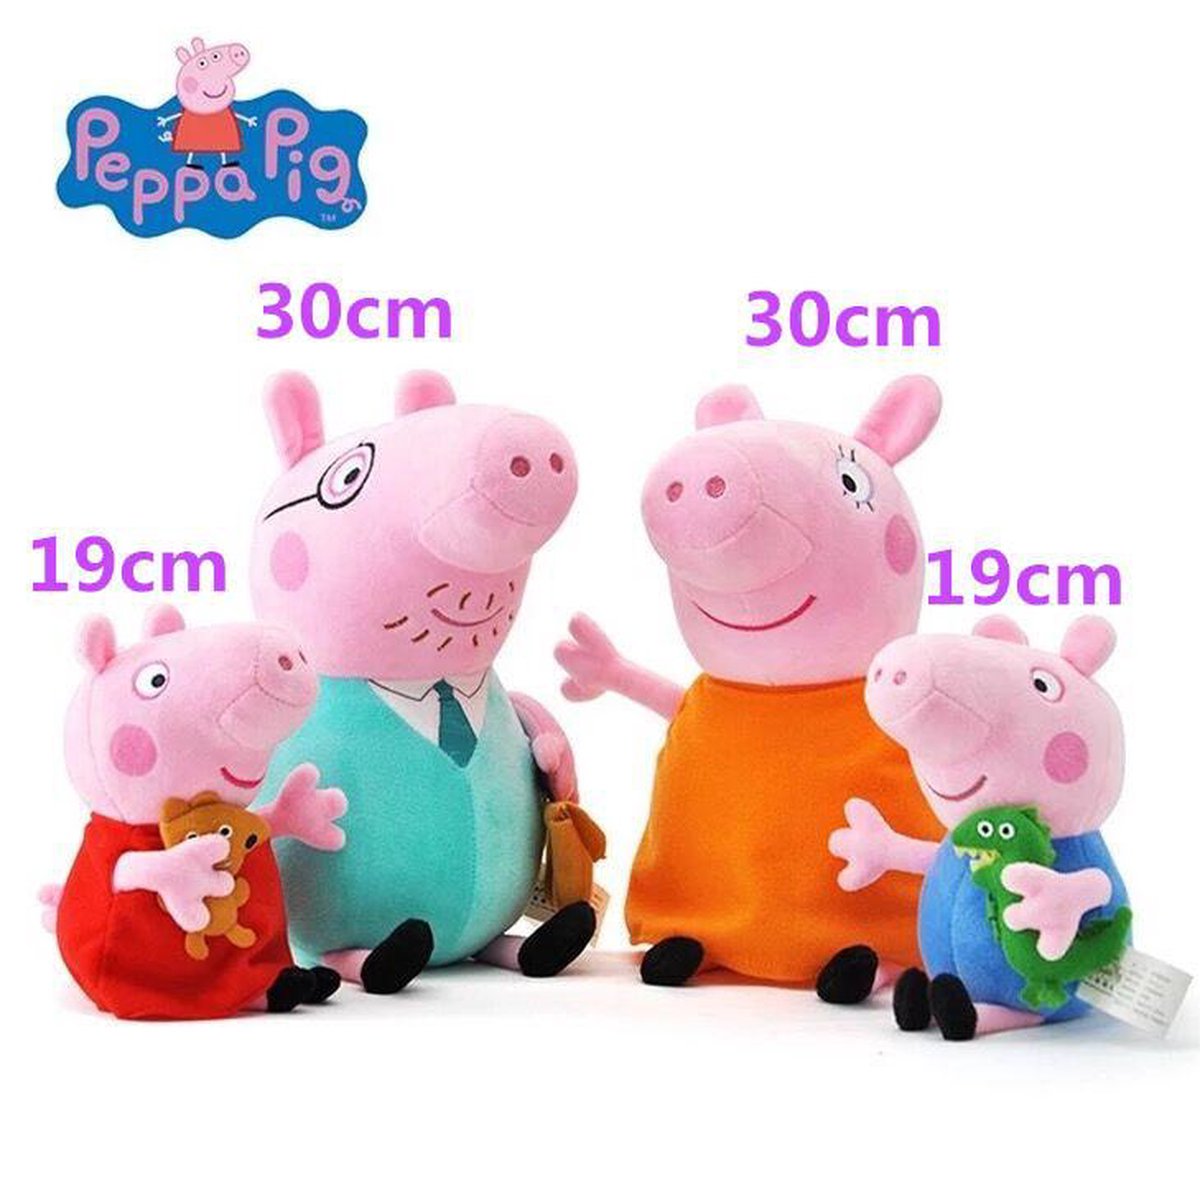 Peppa Pig knuffels pakket, hele familie inclusief George en Peppa, 19 en 30  cm | bol.com